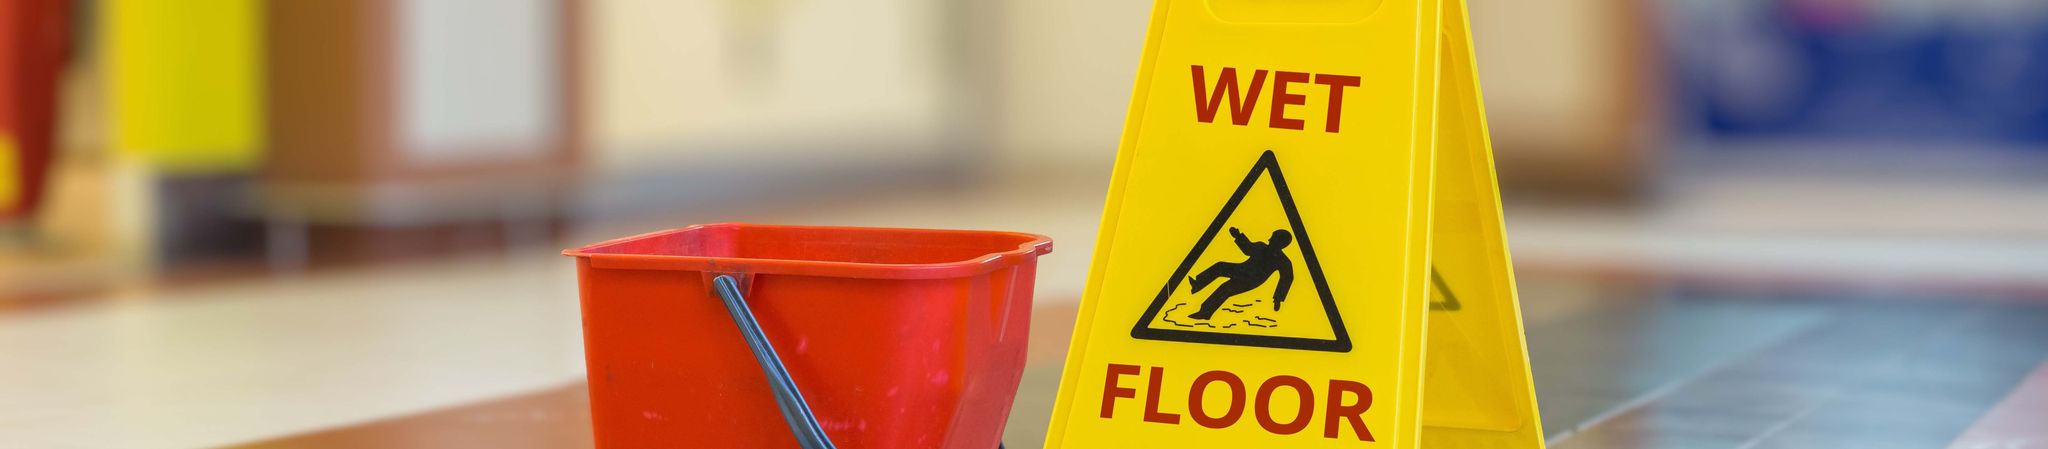 Mop bucket and wet floor sign